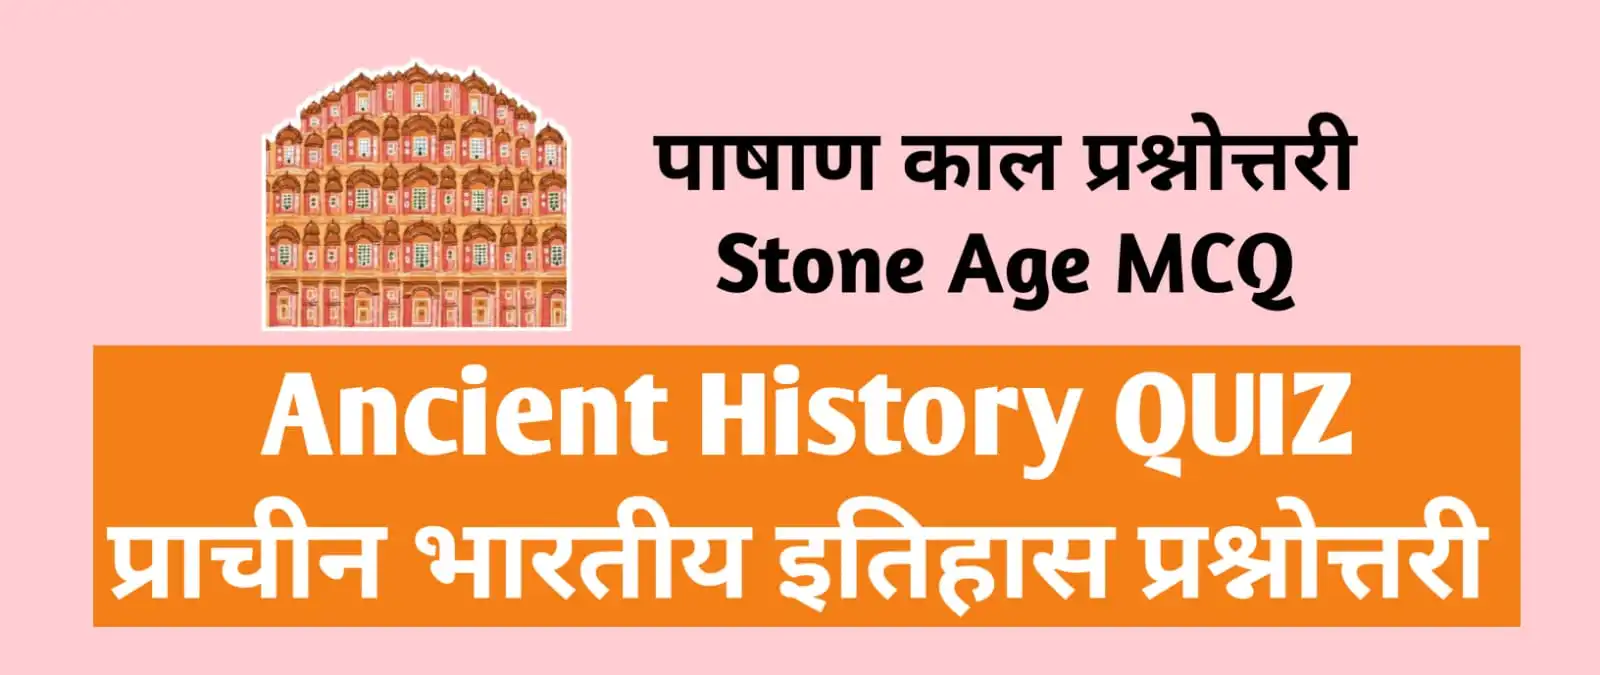 Ancient Indian History Quiz Mcq